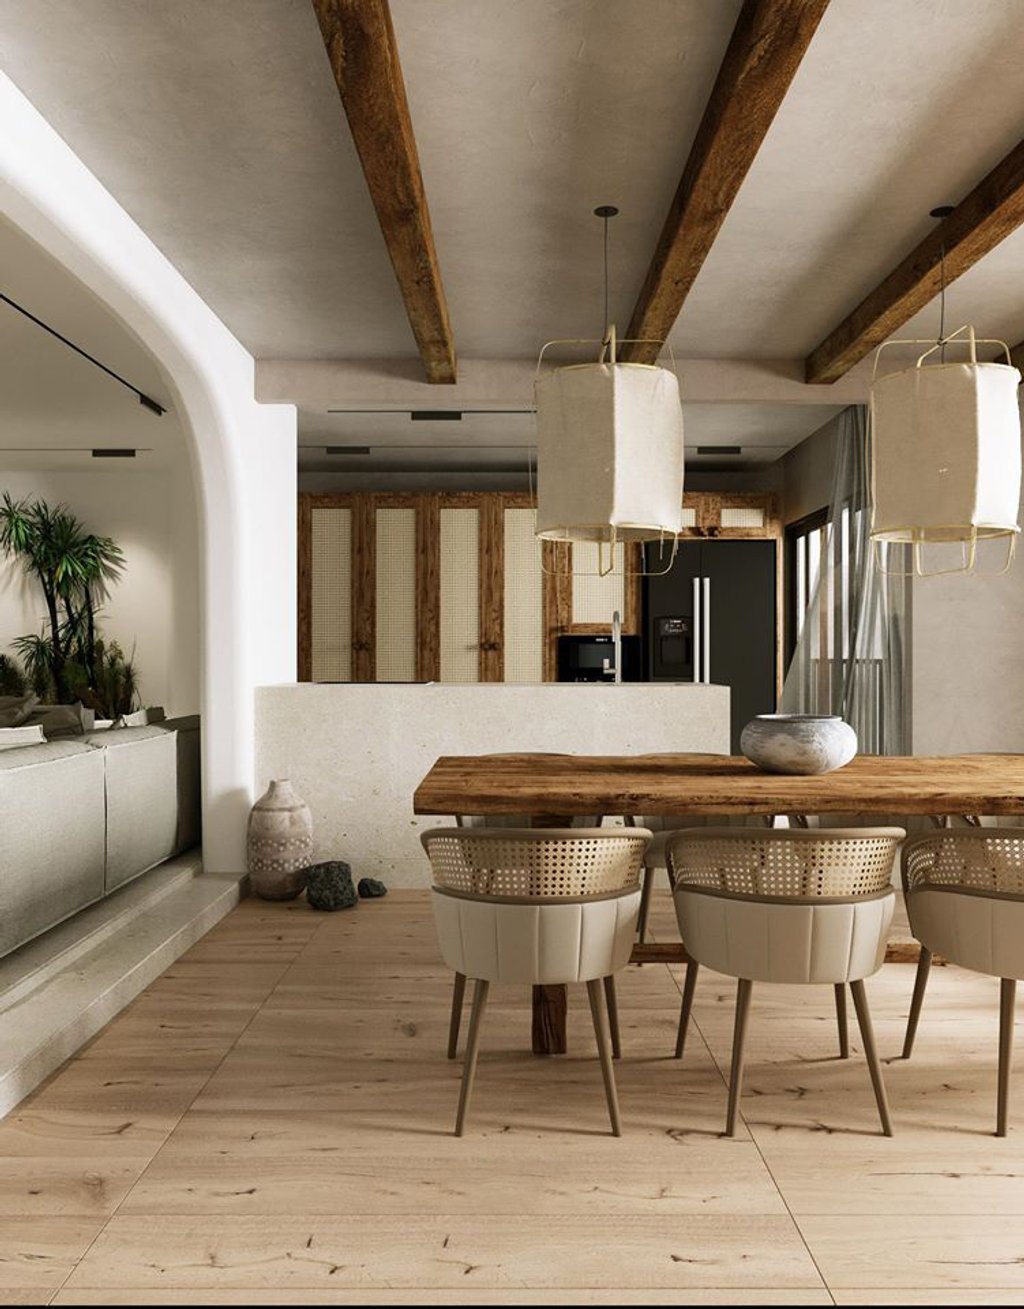 Đảo bếp và bàn ăn cũng vẫn sử dụng tông màu trắng, xám với các vật dụng bằng gỗ. Đặc biệt, không gian này được đặt cạnh cửa sổ để hứng ánh sáng tự nhiên.